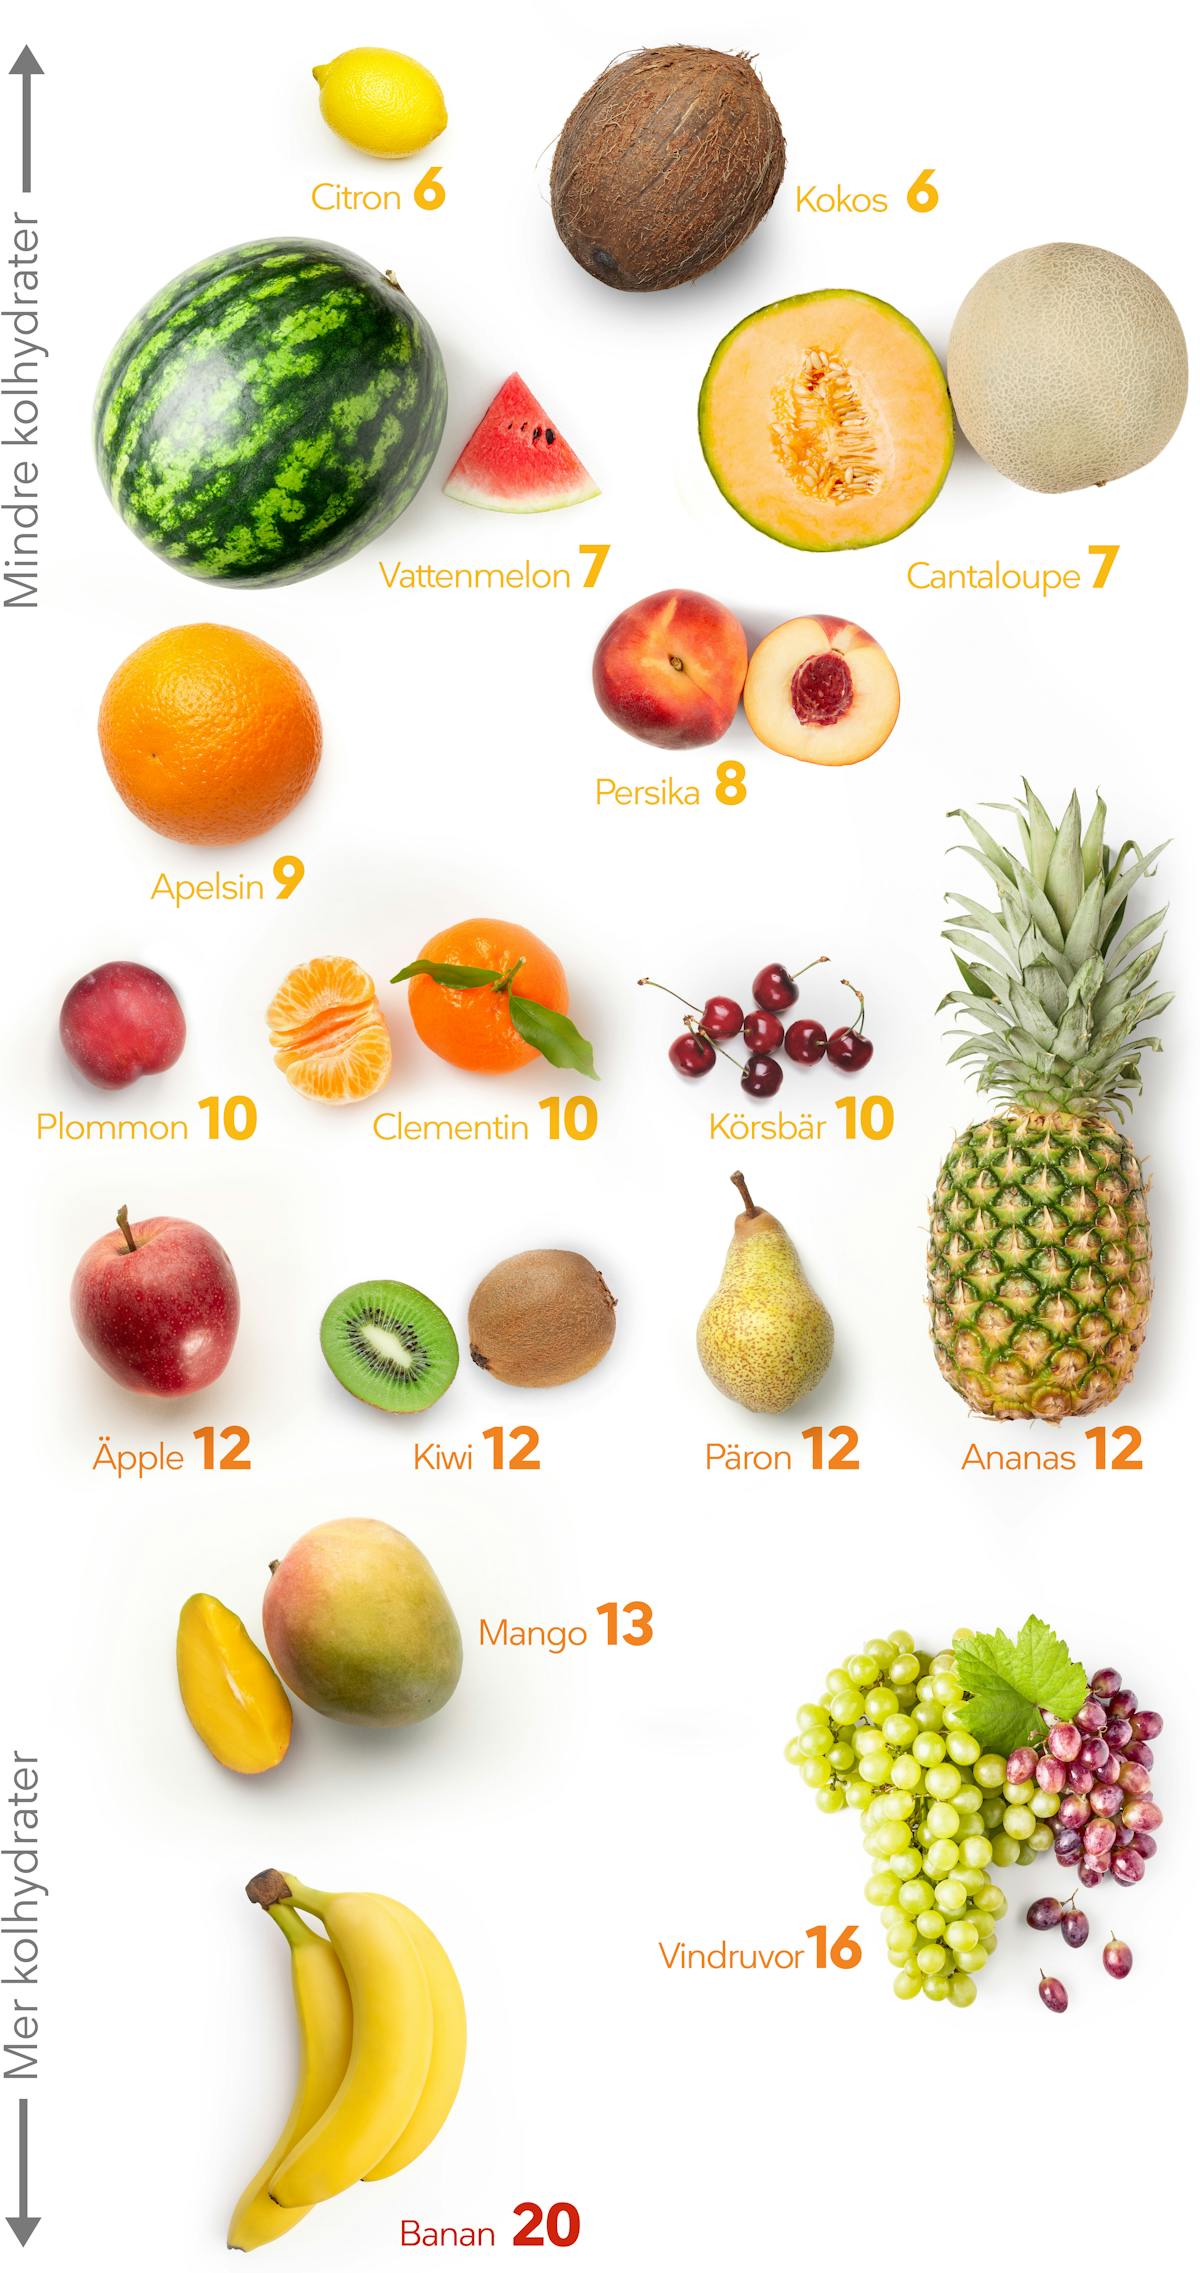 LCHF visuella guider frukt